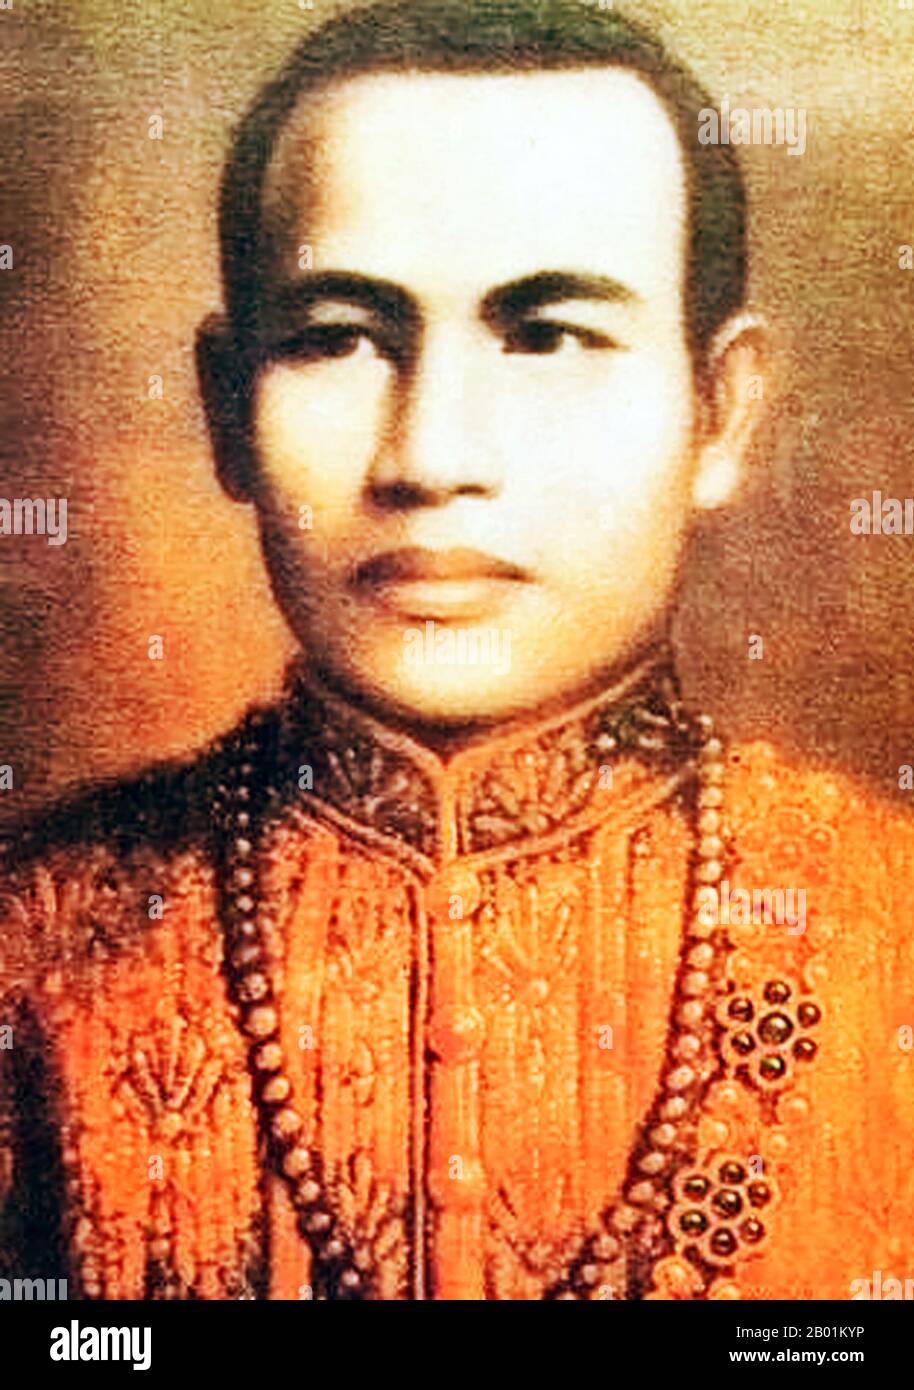 Thaïlande : Roi Taksin le Grand (17 avril 1734 - 7 avril 1782), Roi du Siam (r. 1768-1782). Peinture à l'huile sur toile, 18e siècle. Taksin (Somdet Phra Chao Taksin Maharat) était le seul roi du Royaume de Thonburi. Il est grandement vénéré par le peuple thaïlandais pour son leadership dans la libération du Siam de l'occupation birmane après la deuxième chute d'Ayutthaya en 1767, et l'unification ultérieure du Siam après sa chute sous divers seigneurs de guerre. Il établit la ville de Thonburi comme la nouvelle capitale, car la ville Ayutthaya avait été presque complètement détruite par les envahisseurs. Banque D'Images